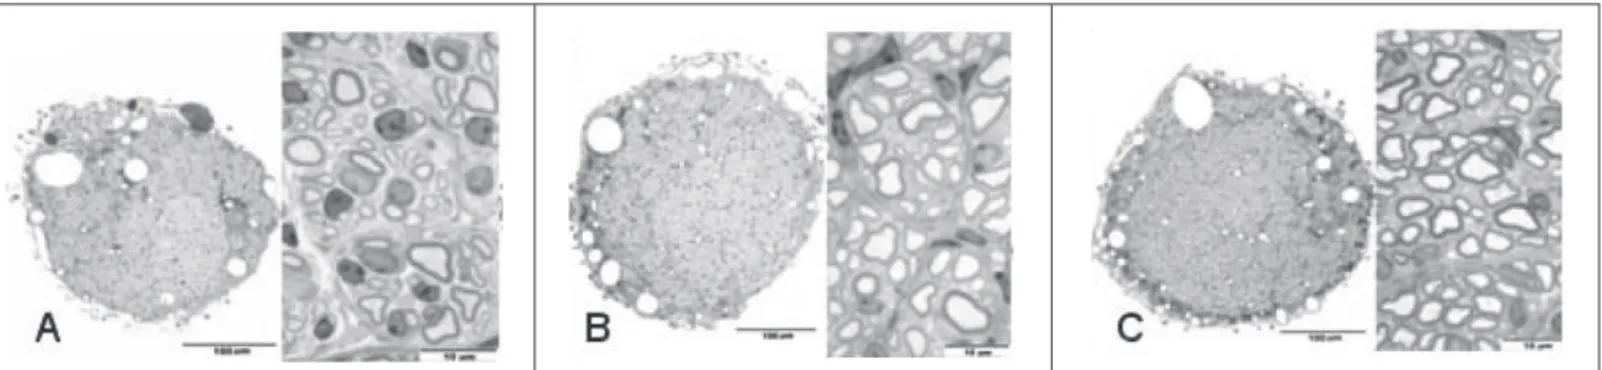 Figura 2 – A) microfotografia de corte histológico do nervo ciático de um camundongo do grupo colágeno